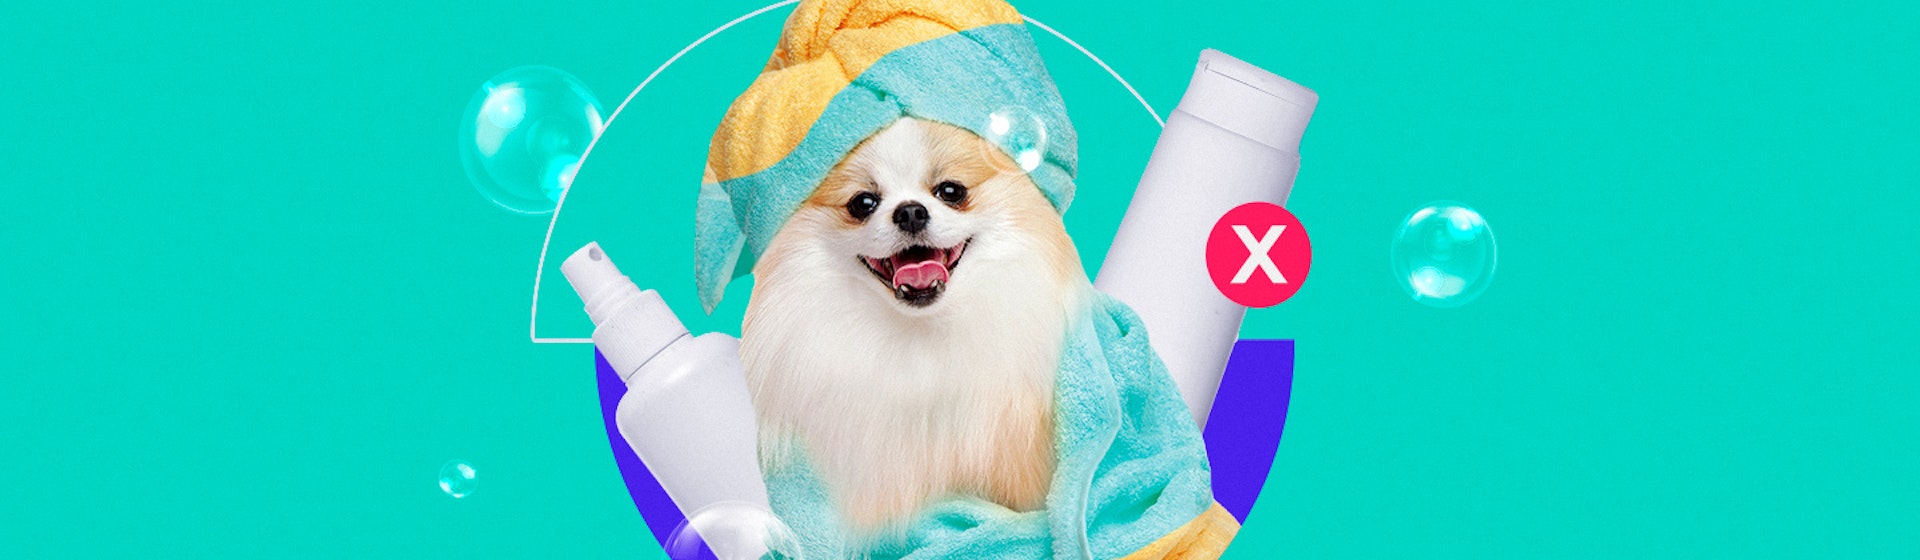 7 marcas de shampoo vegano que dicen NO al testeo en animales